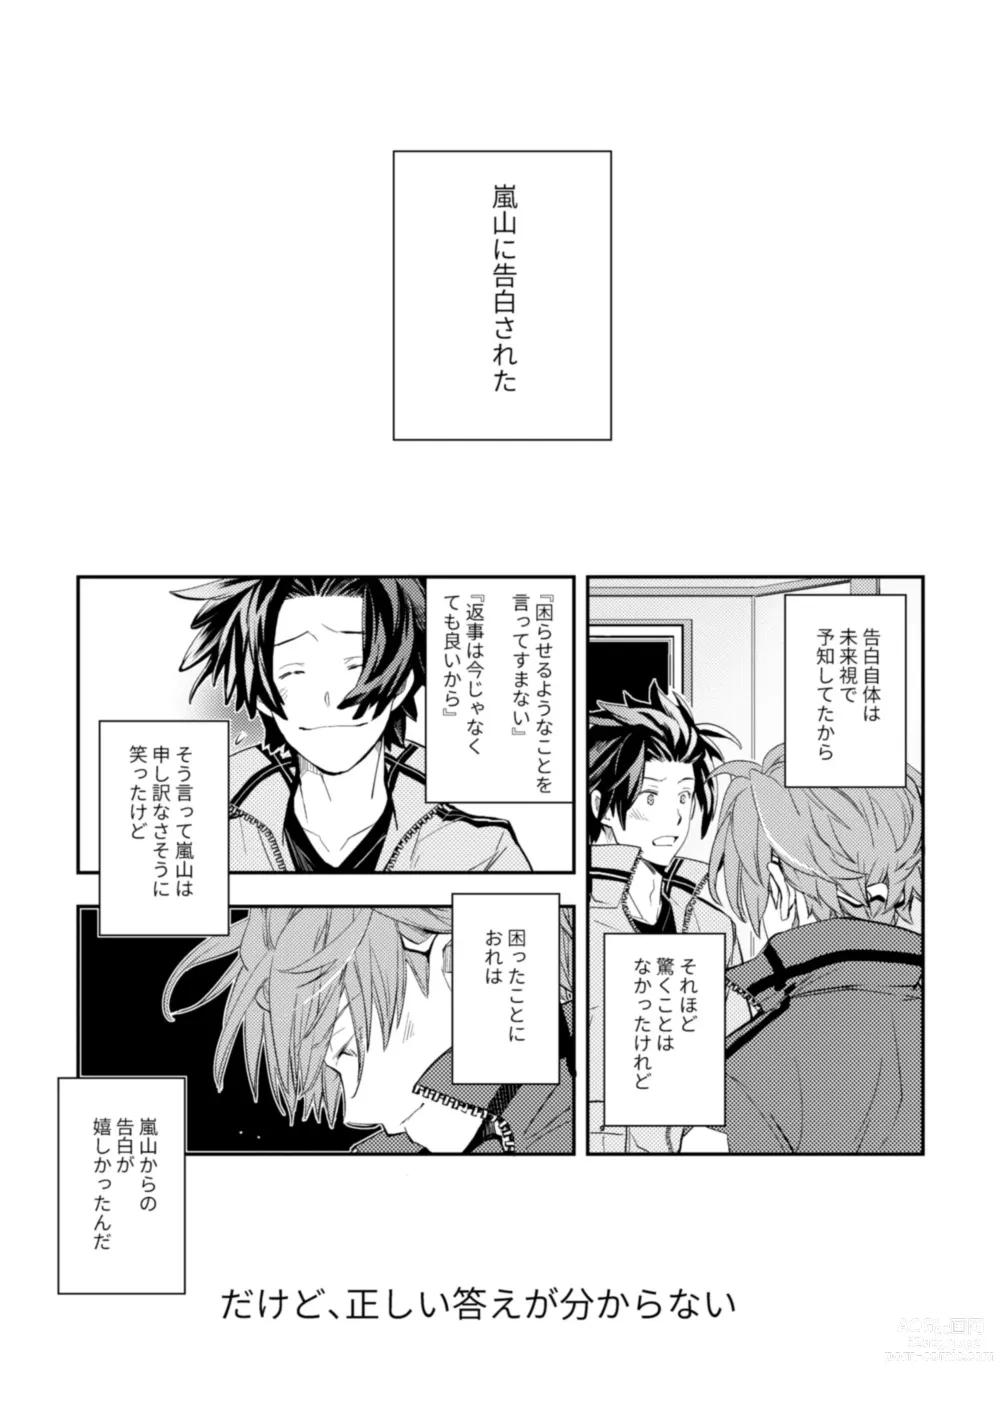 Page 6 of doujinshi Mirai Sentaku no Jiyuu